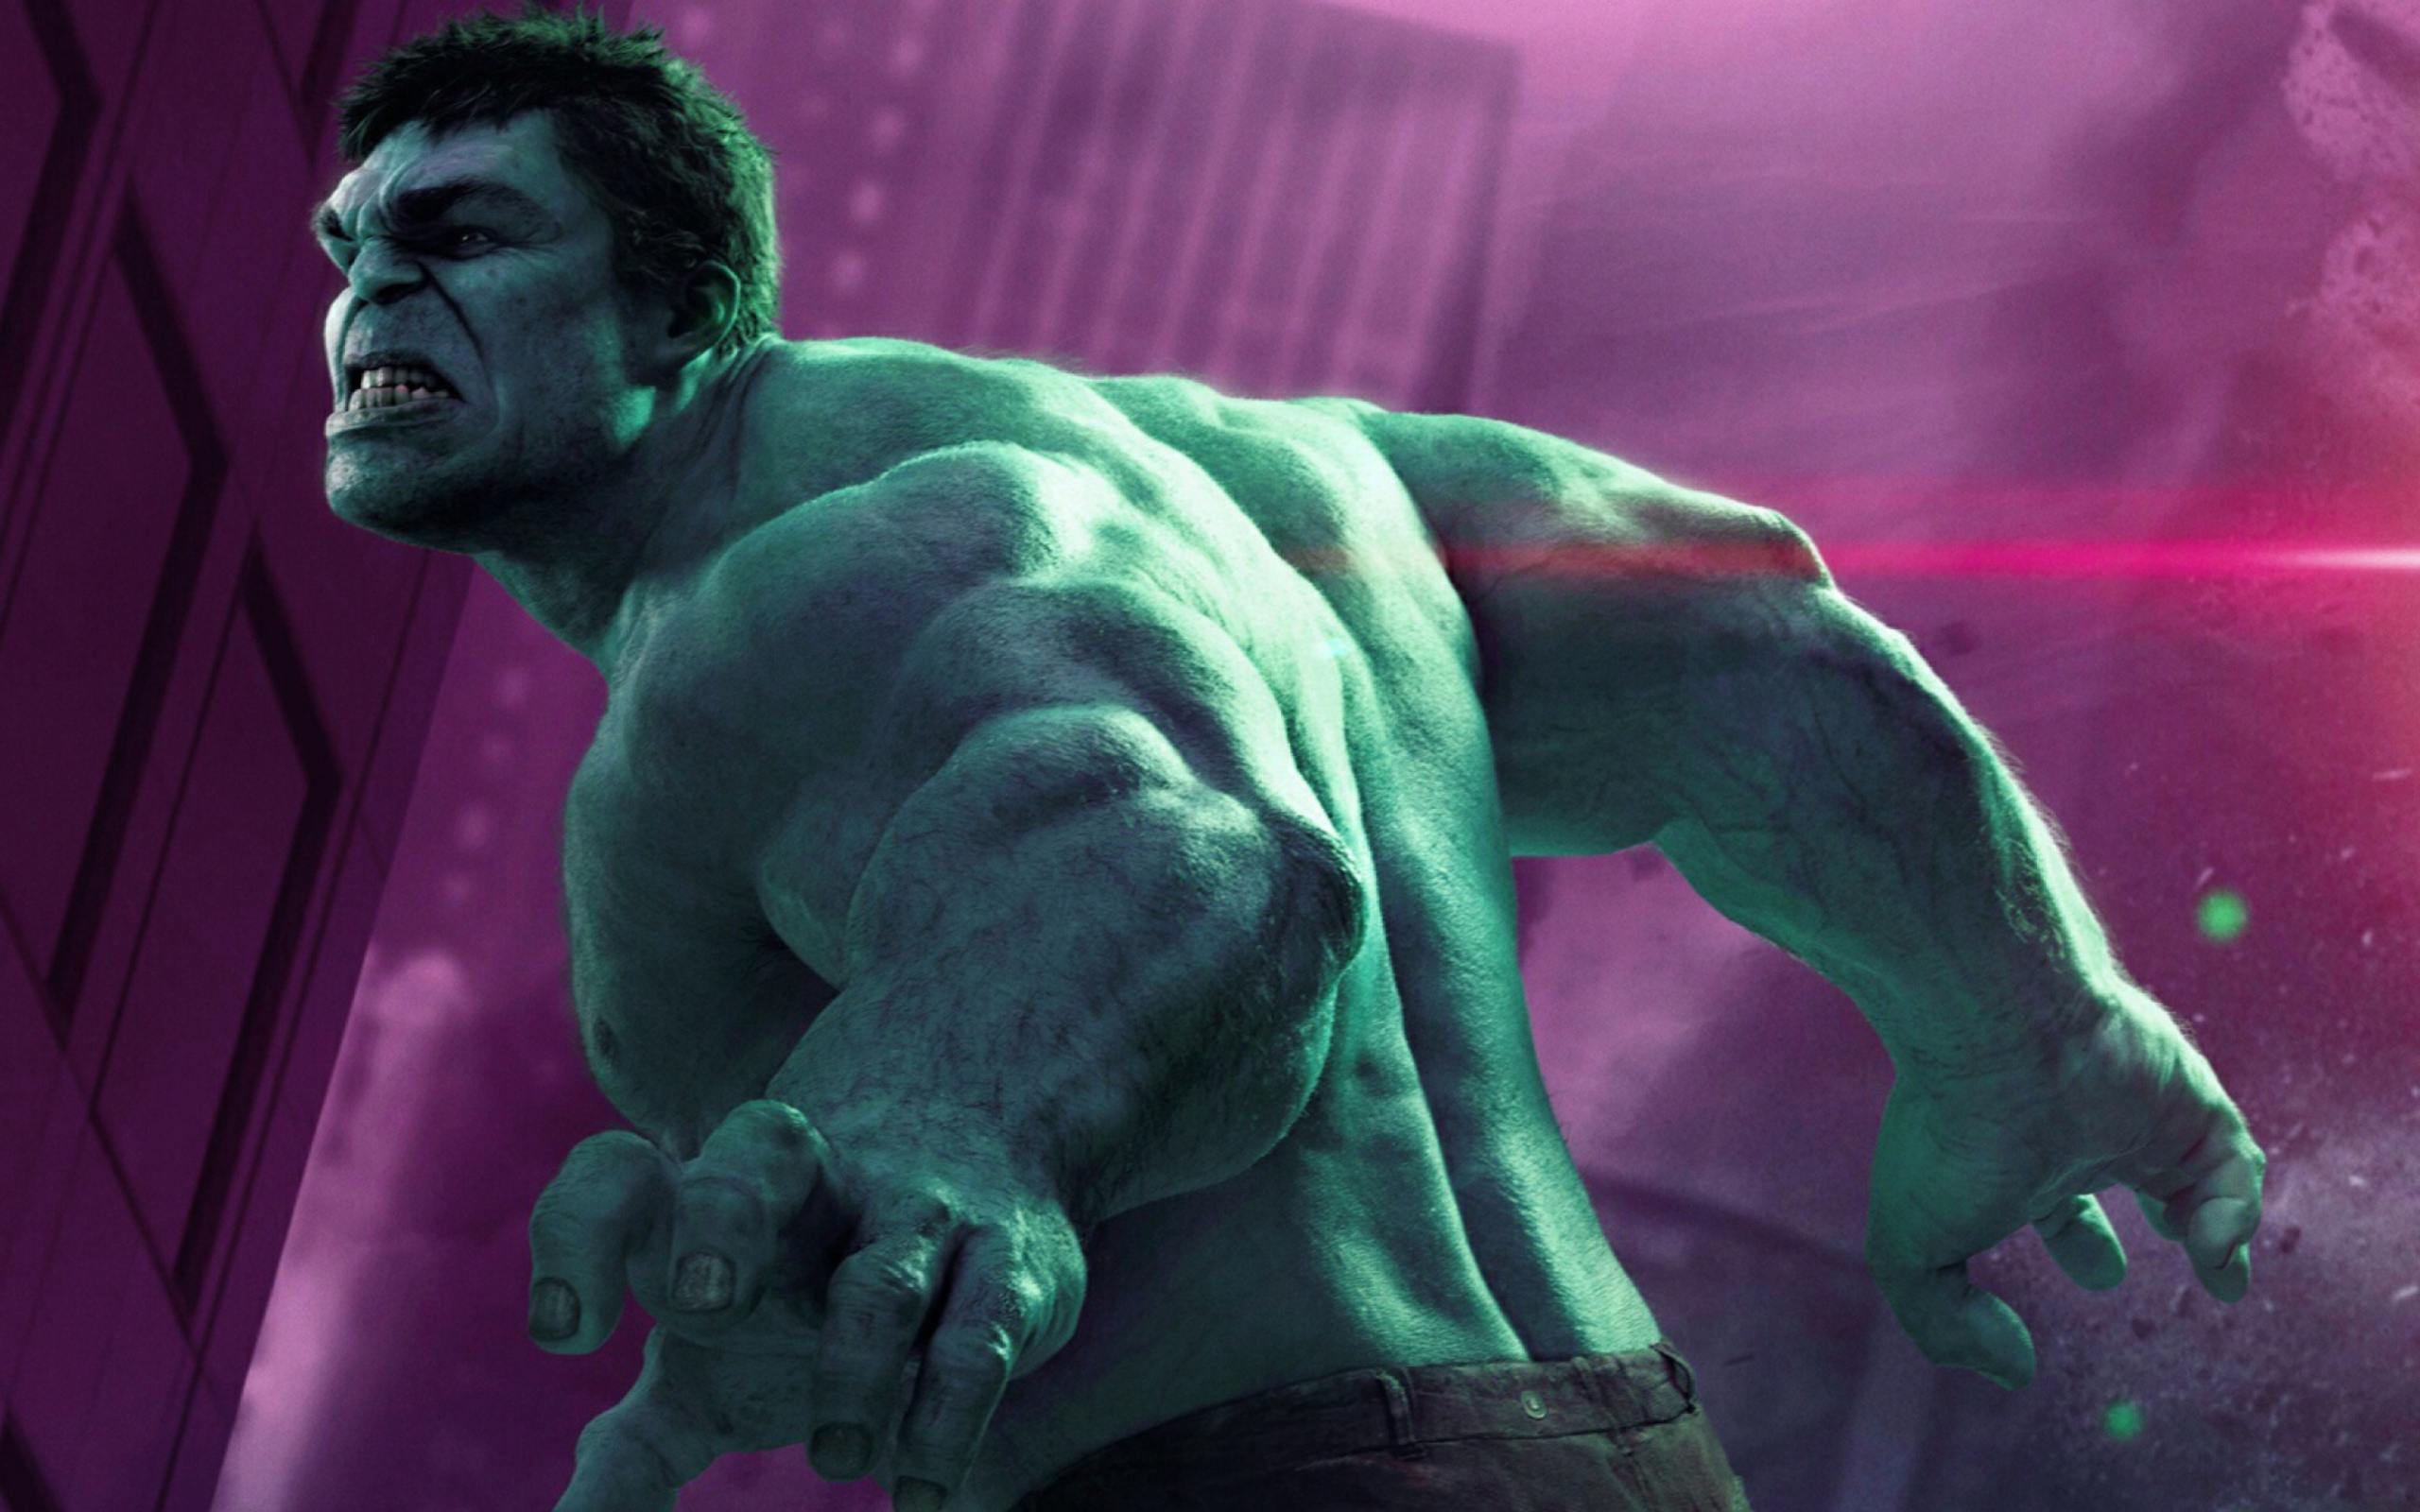 Das Hulk - The Avengers 2012 Wallpaper 2560x1600